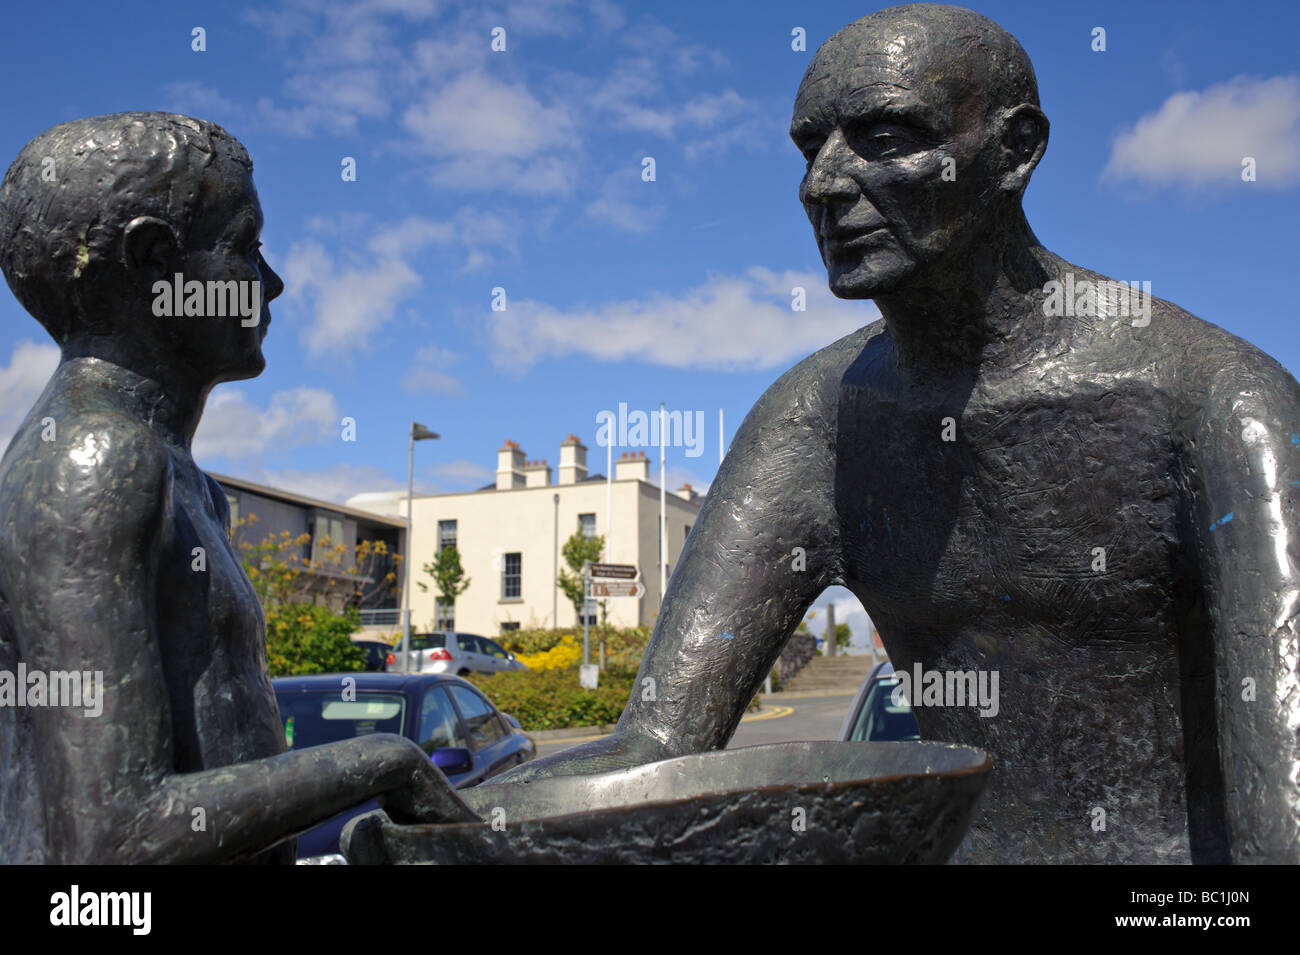 Statua di ragazzo e uomo a Carrick on Shannon - Irlanda Foto Stock